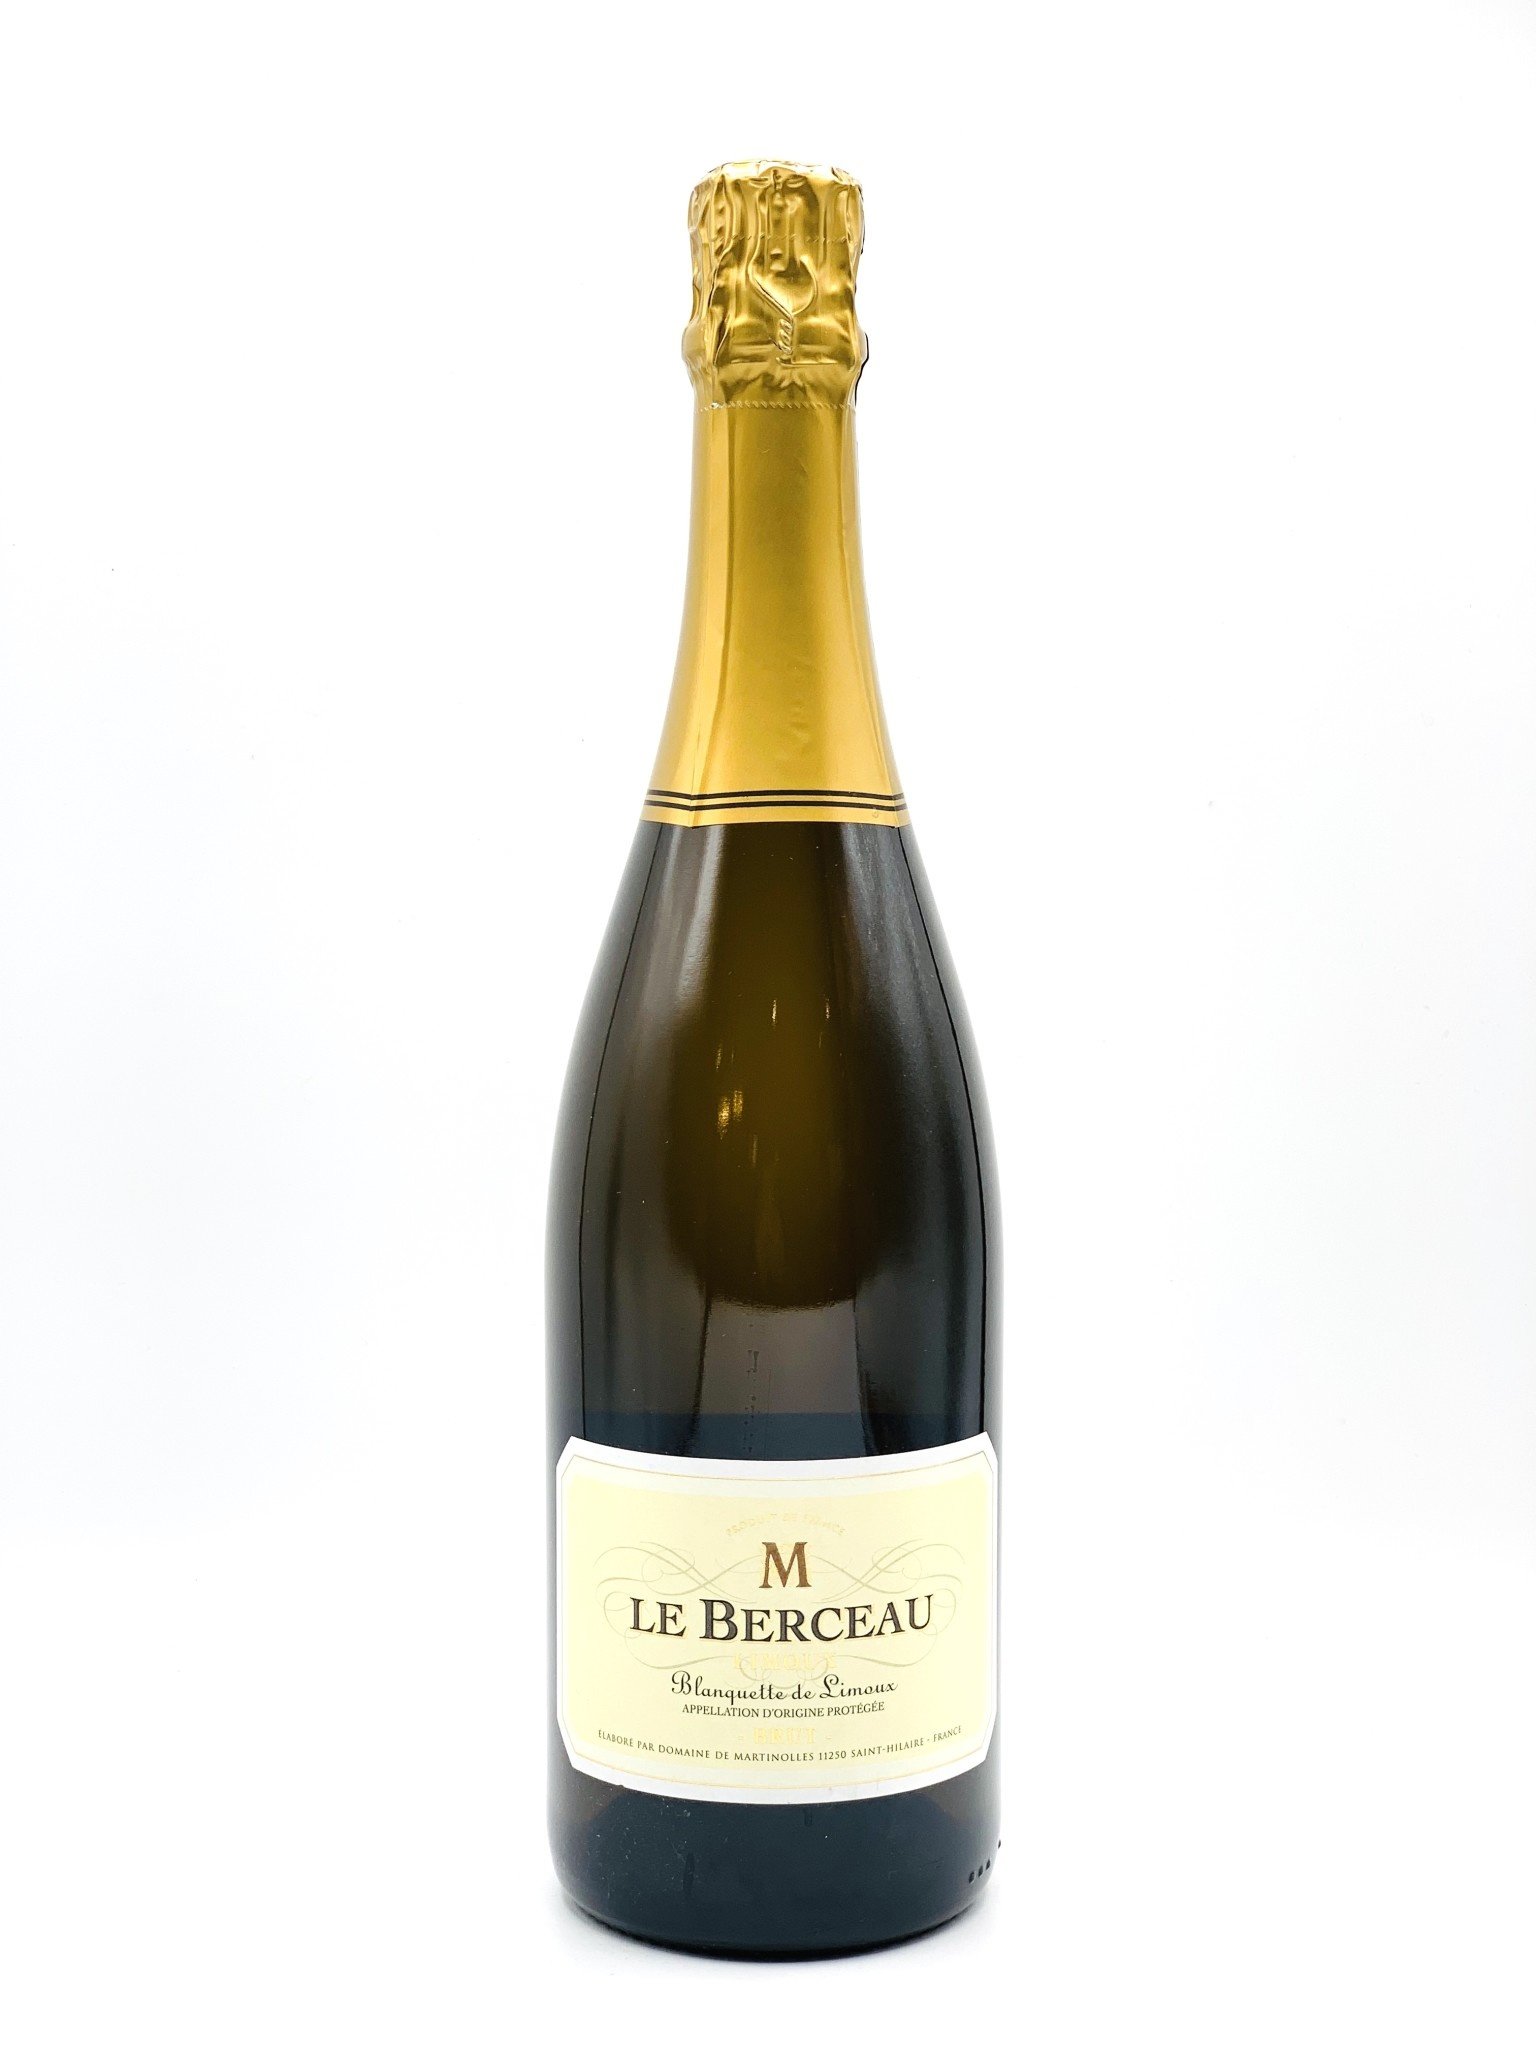 Blanquette de Limoux Brut NV Domaine de Martinolles “ Le Berceau” 750ml